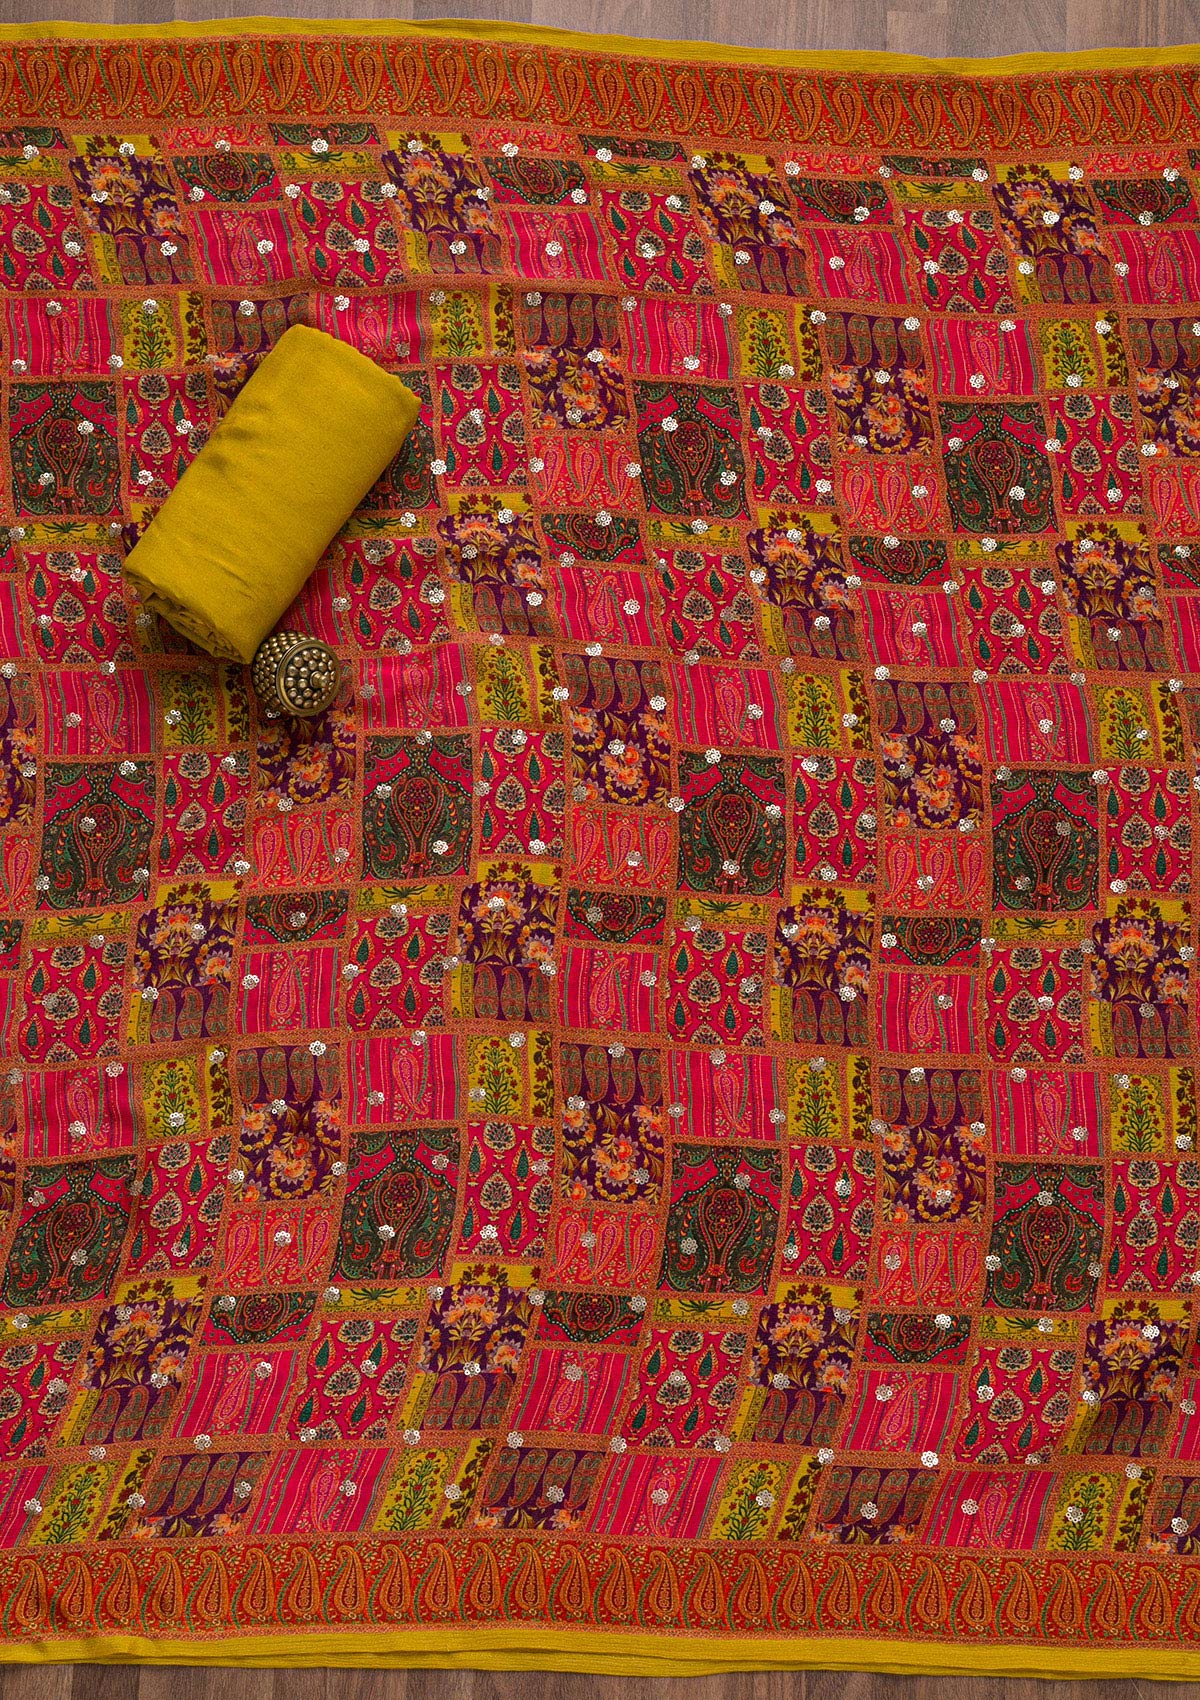 Mustard Zariwork Banarasi Unstitched Salwar Suit